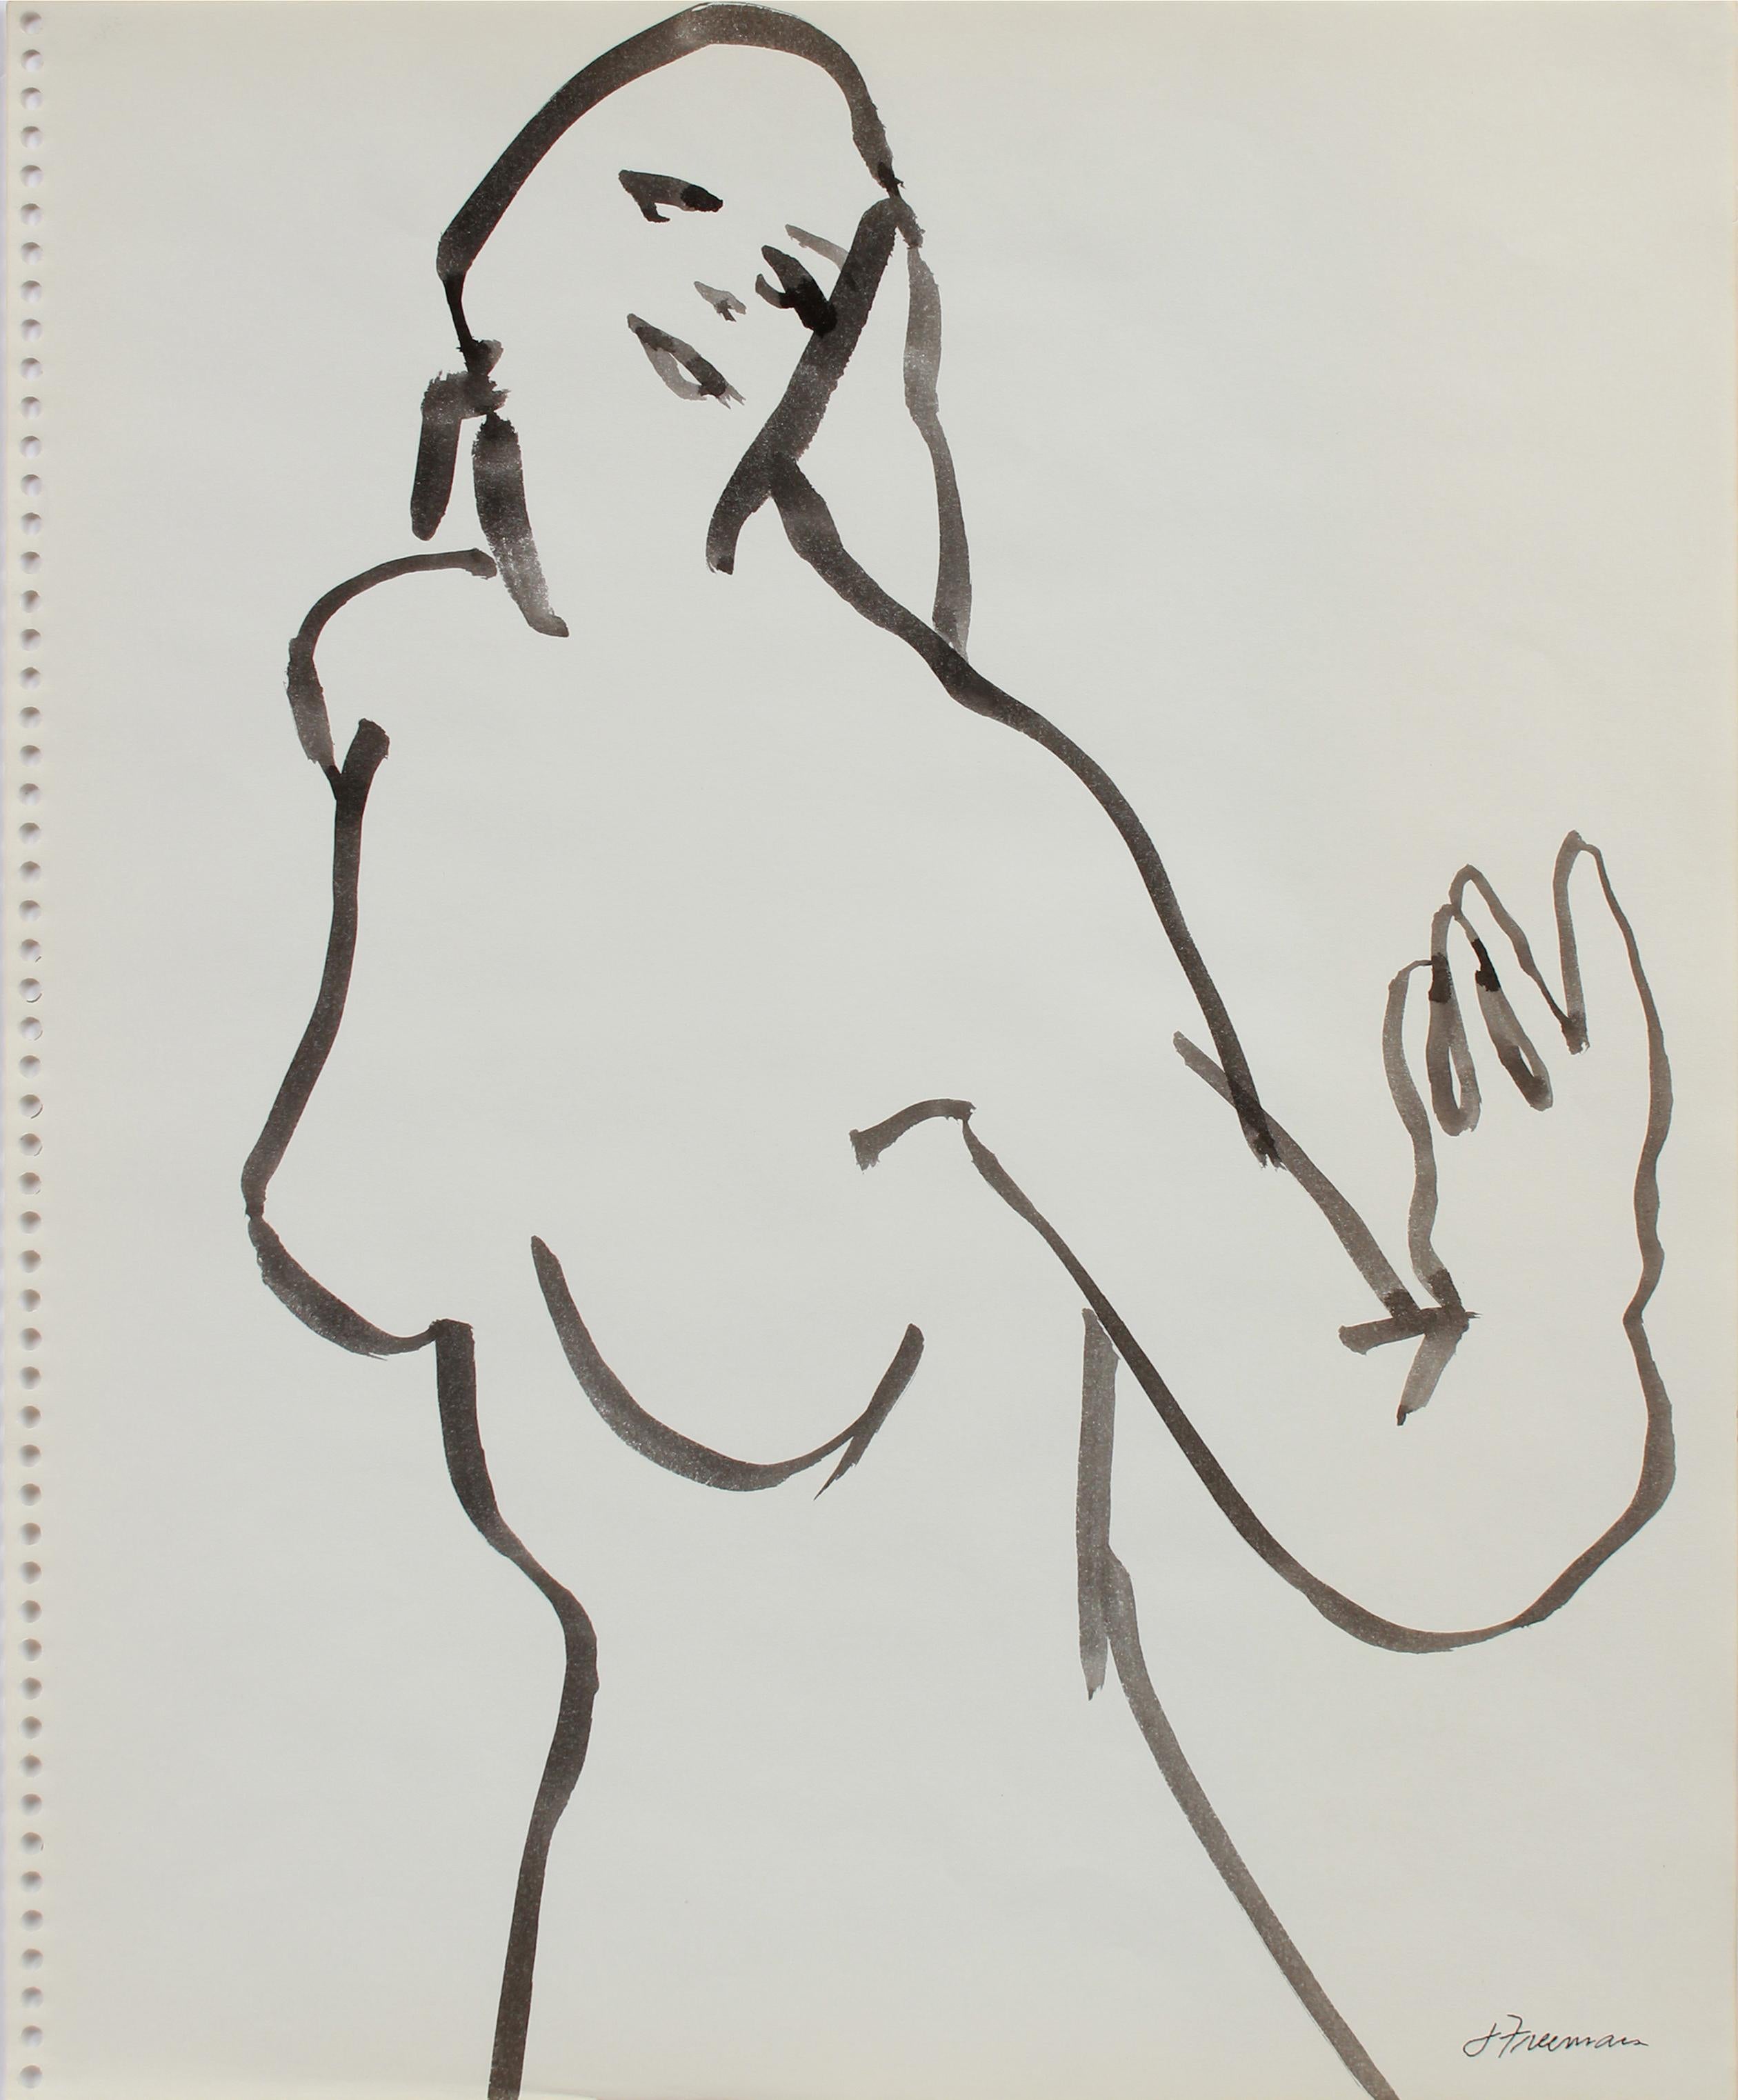 Jack Freeman Figurative Art - Loose Modernist Figure Late 1970s Ink